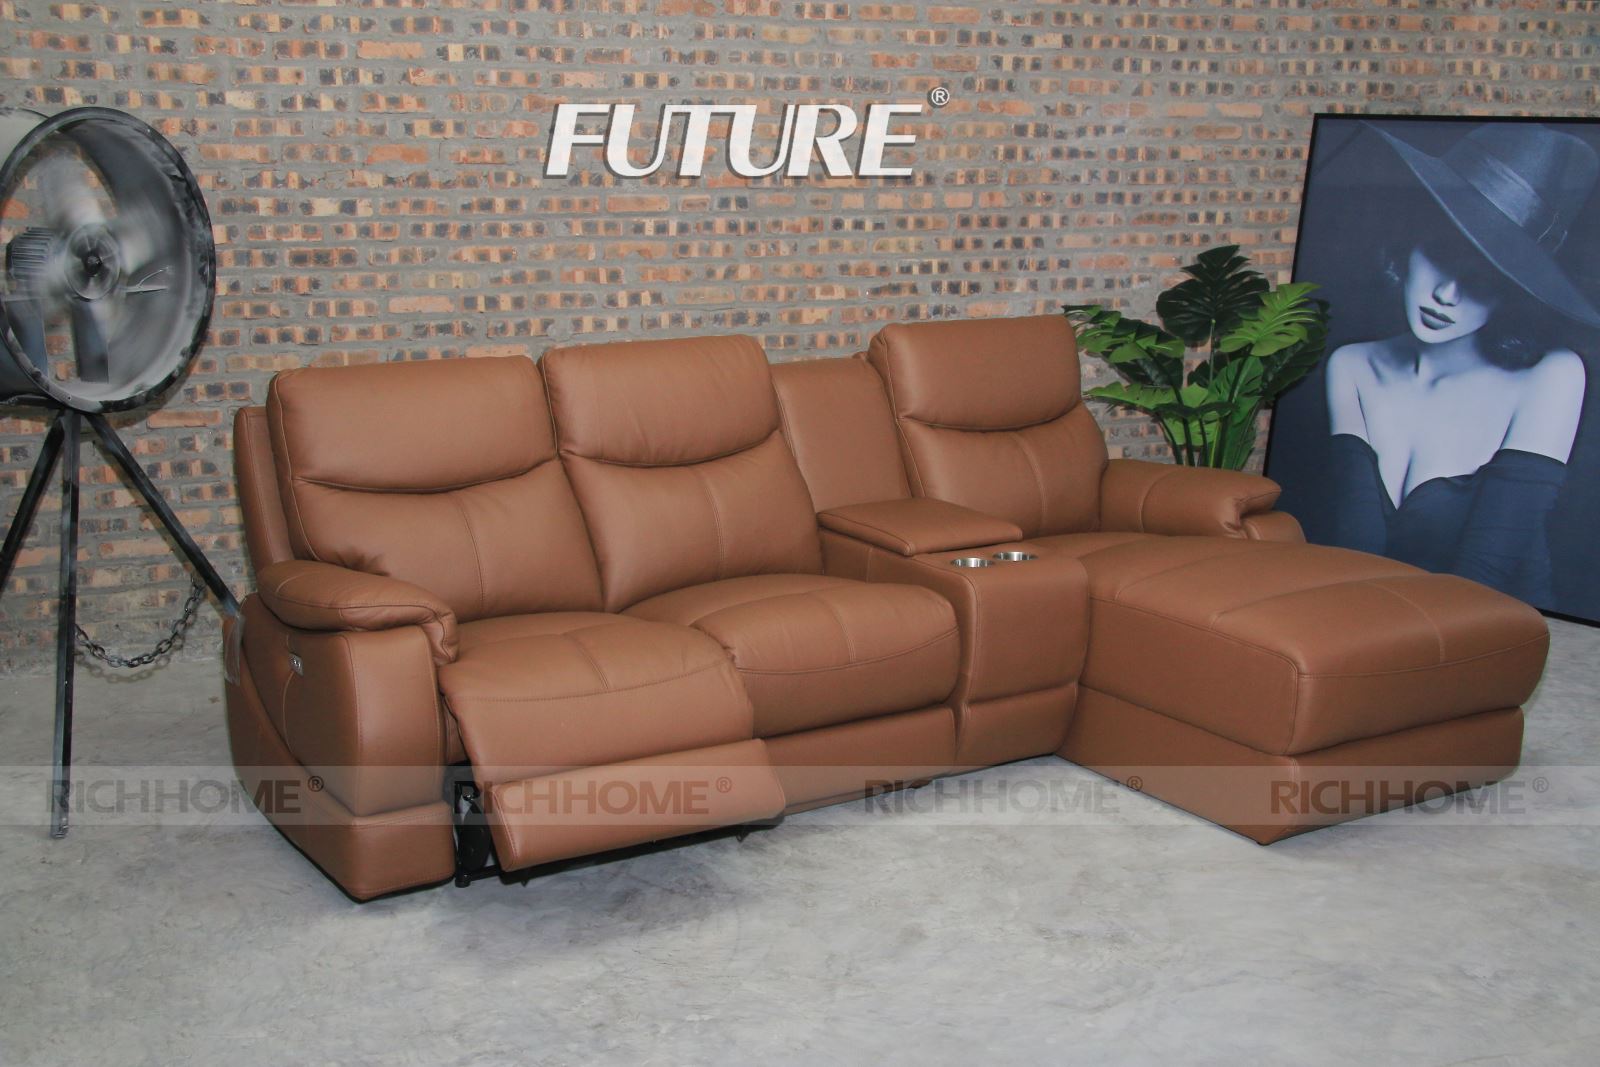 Sofa màu da bò - đẳng cấp chinh phục mọi khách hàng - Ảnh 2